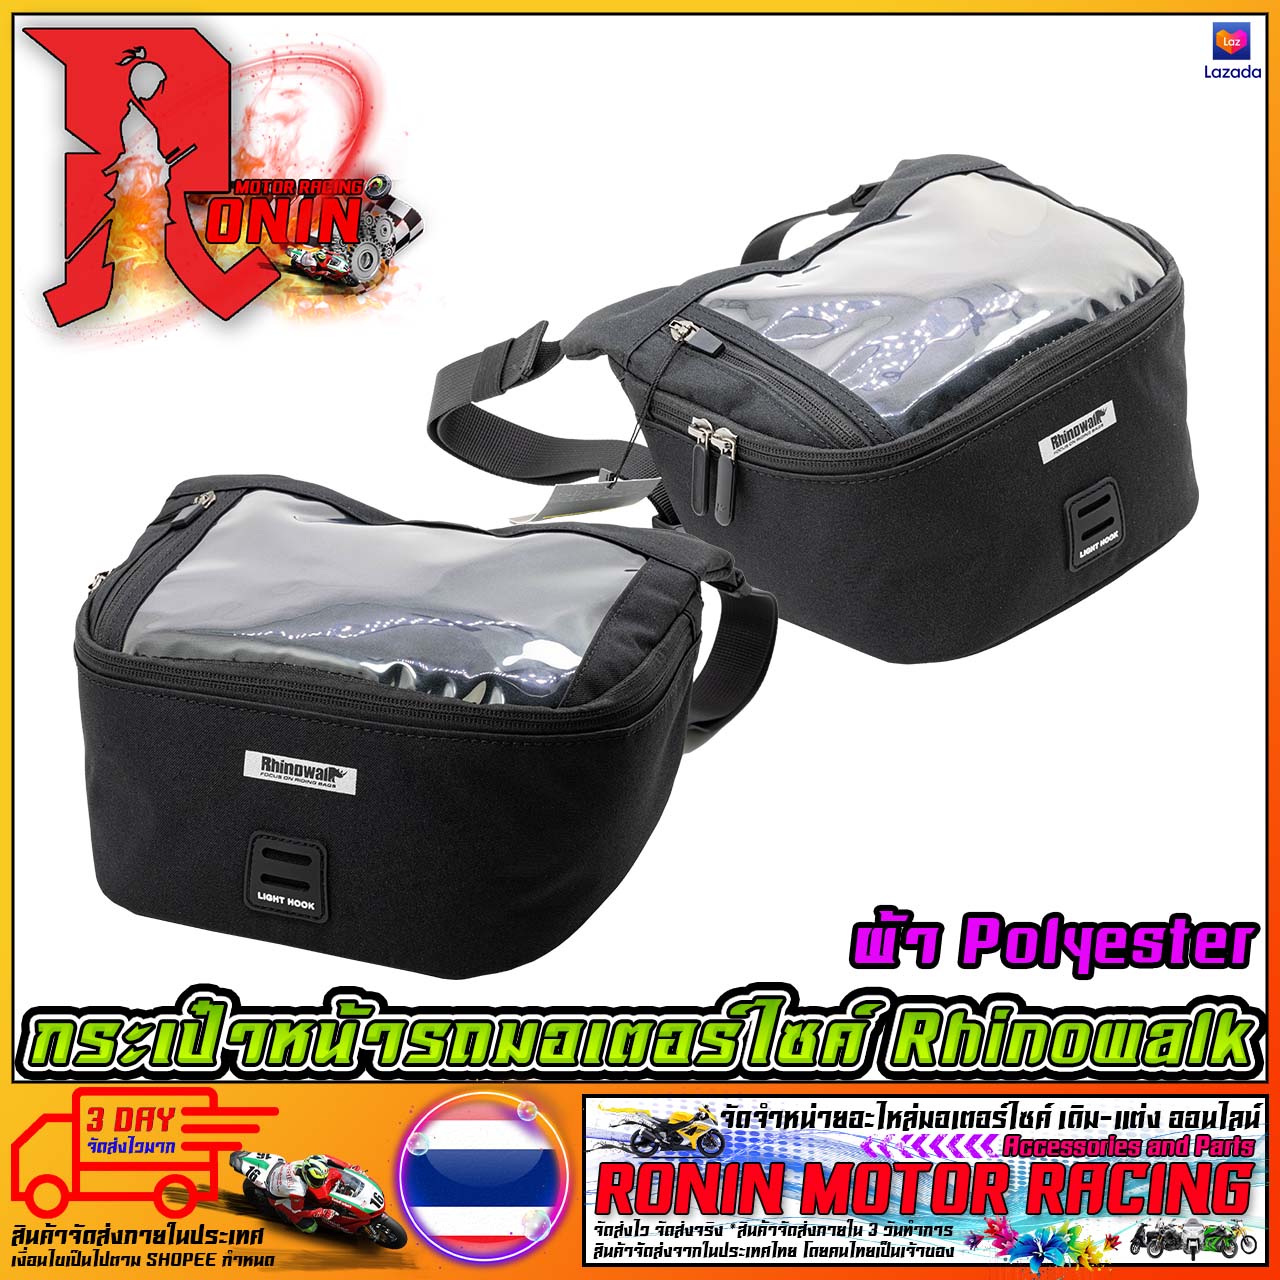 กระเป๋าหน้ารถมอเตอร์ไซค์ Rhinowalk รุ่น X21923-ผ้า Polyester ใช้กับรถมอเตอร์ไซค์ WAVE FINO MIO NOUVO PCX NMAX XMAX